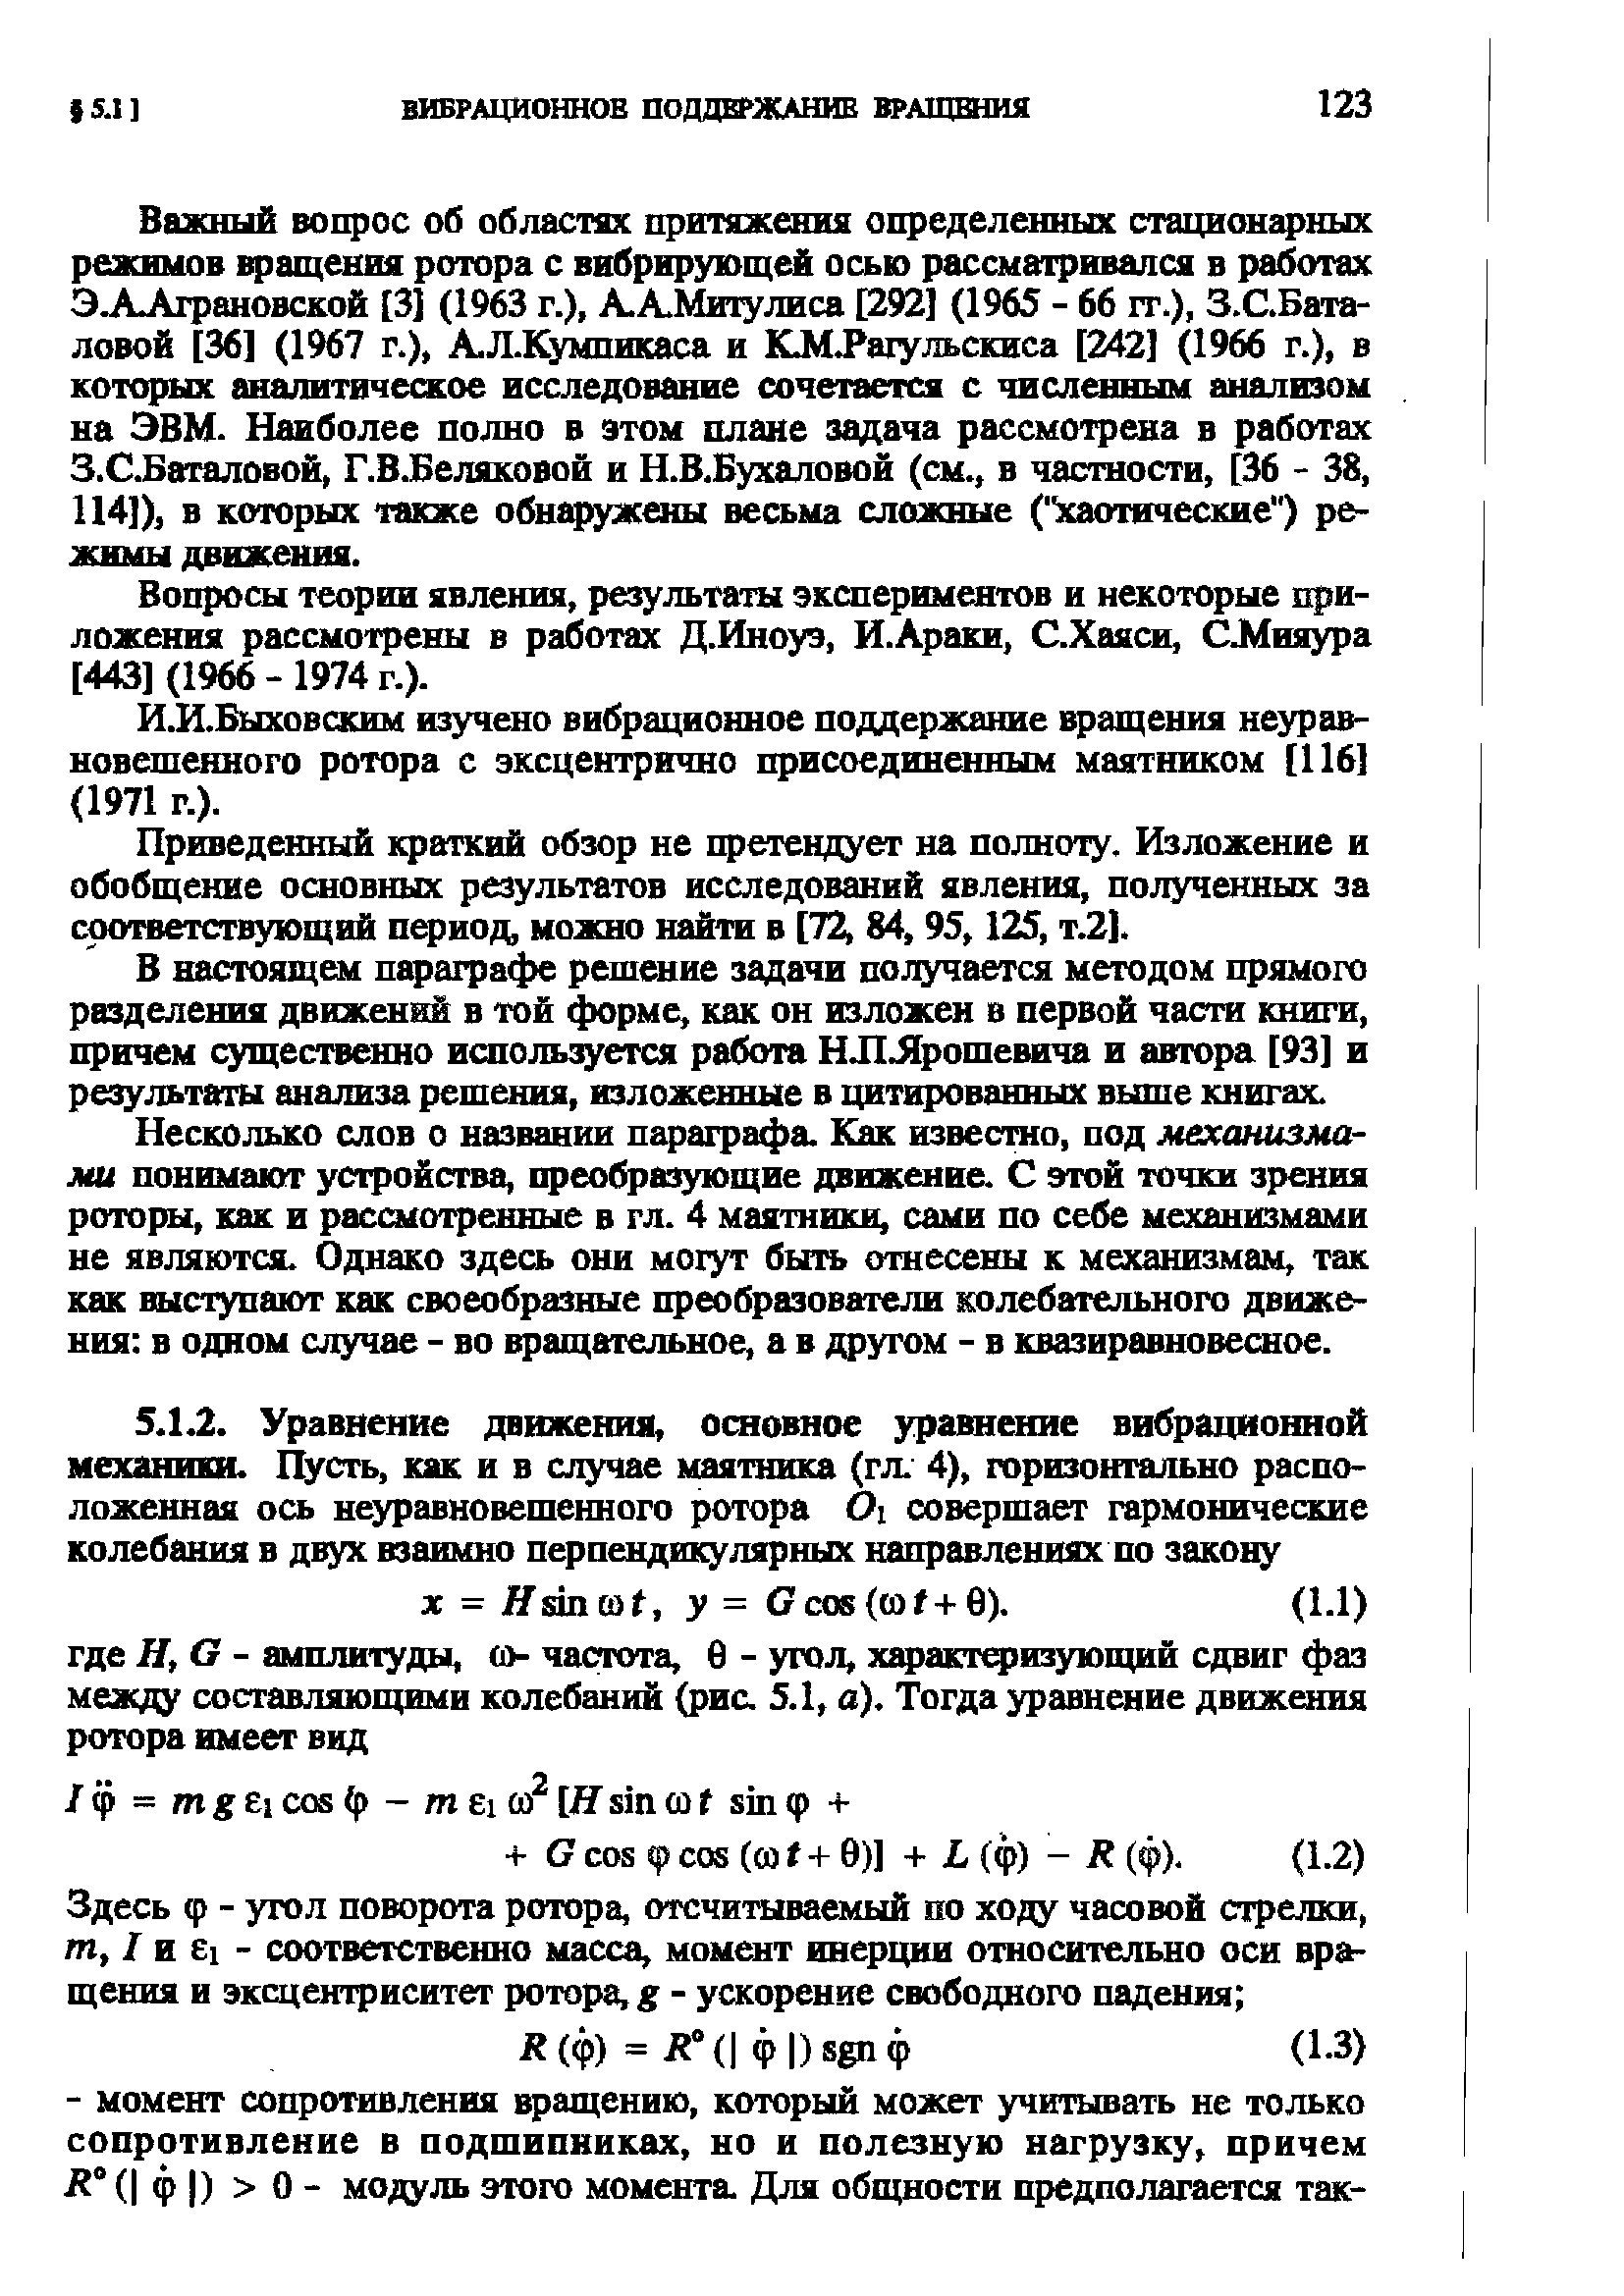 Быховским изучено вибрационное поддержание вращения неуравновешенного ротора с эксцентрично присоединшным маятником [116] (1971 г.).
